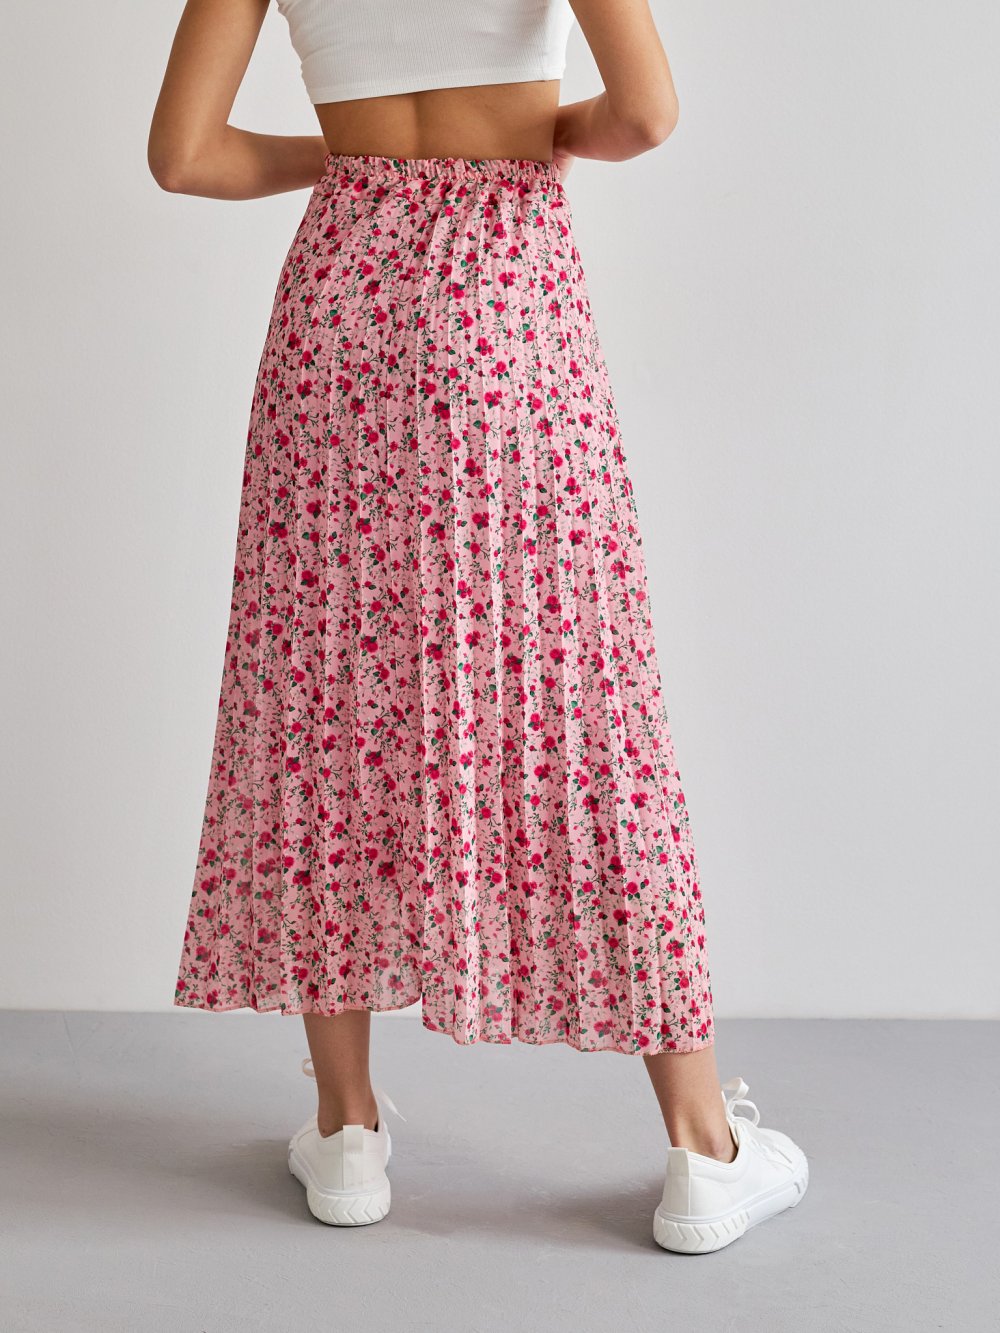 Růžová květovaná sukně Leine